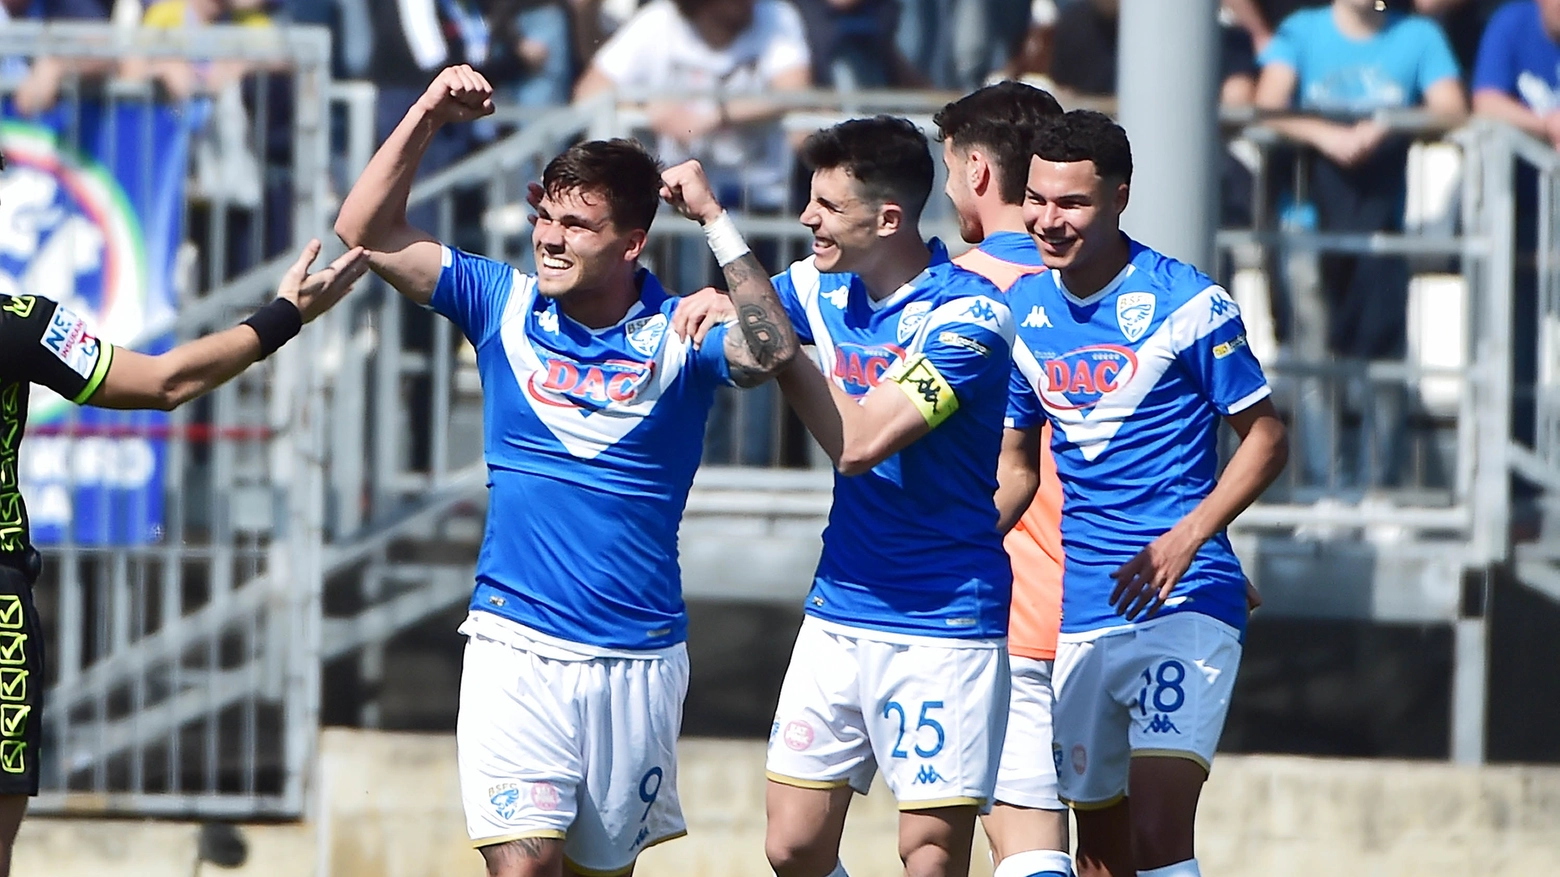 L'esultanza della squadra al gol di Flavio Bianchi durante Brescia-Pisa, partita di Serie B